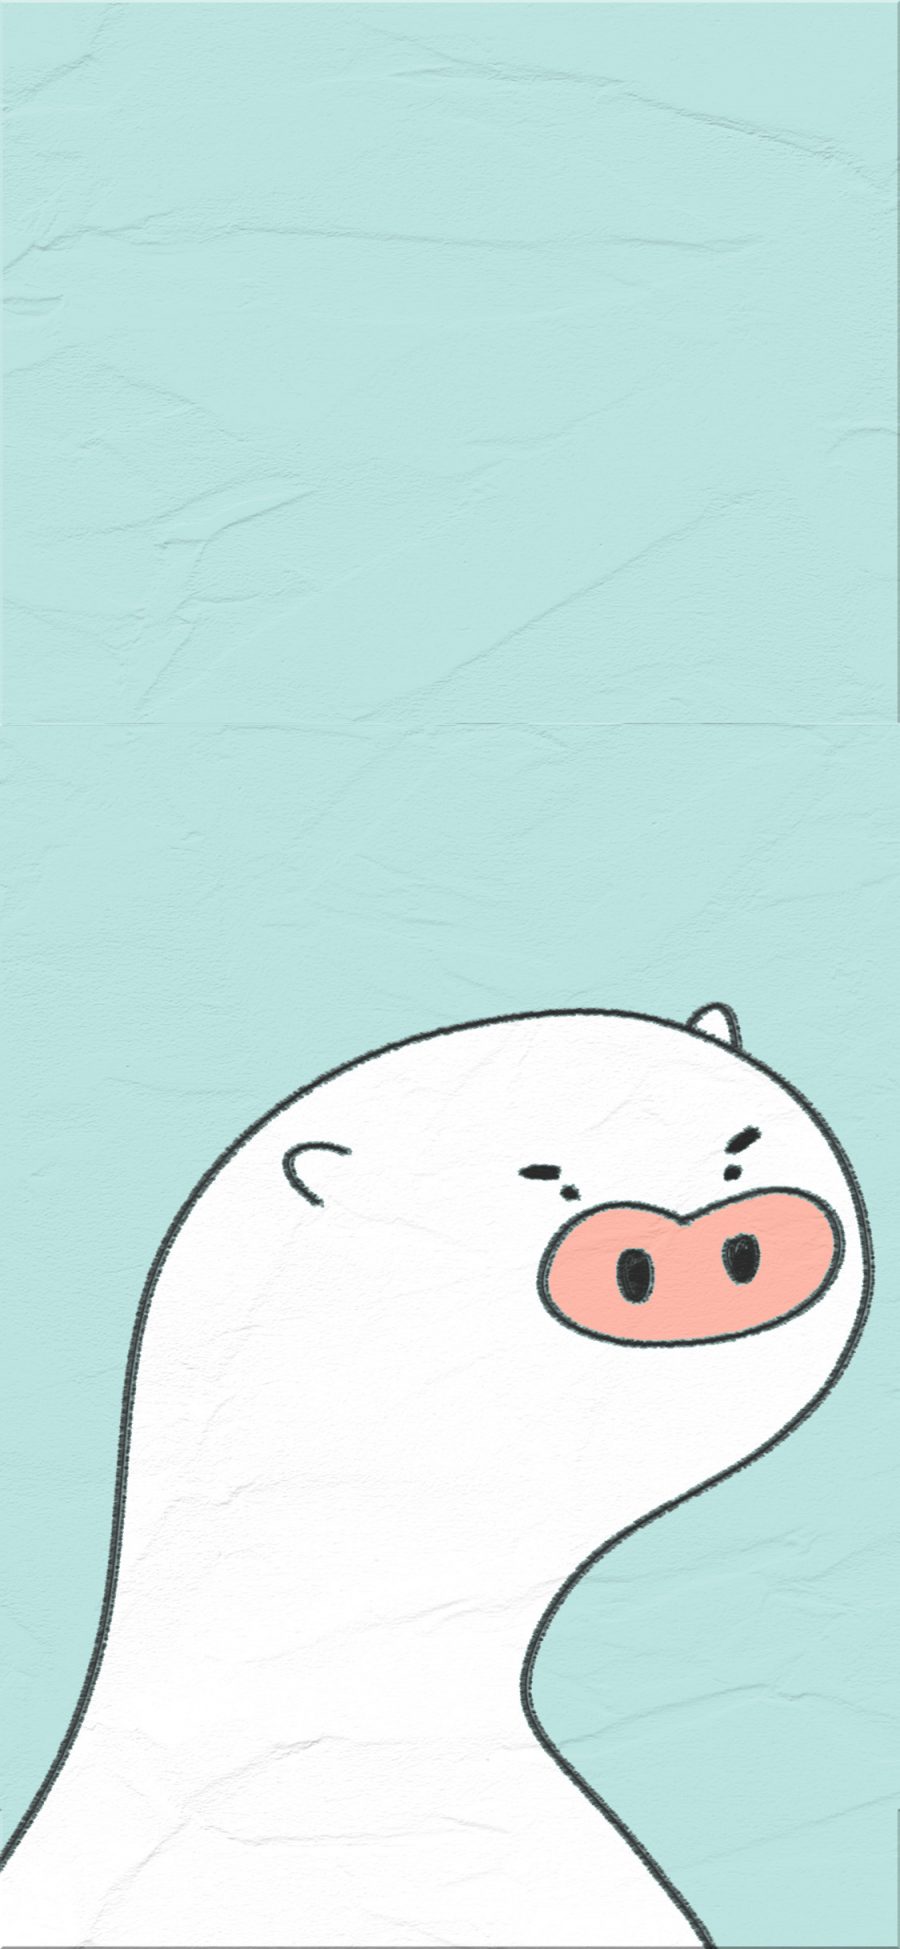 [2436×1125]蓝色背景 卡通 猪 萌物 苹果手机动漫壁纸图片